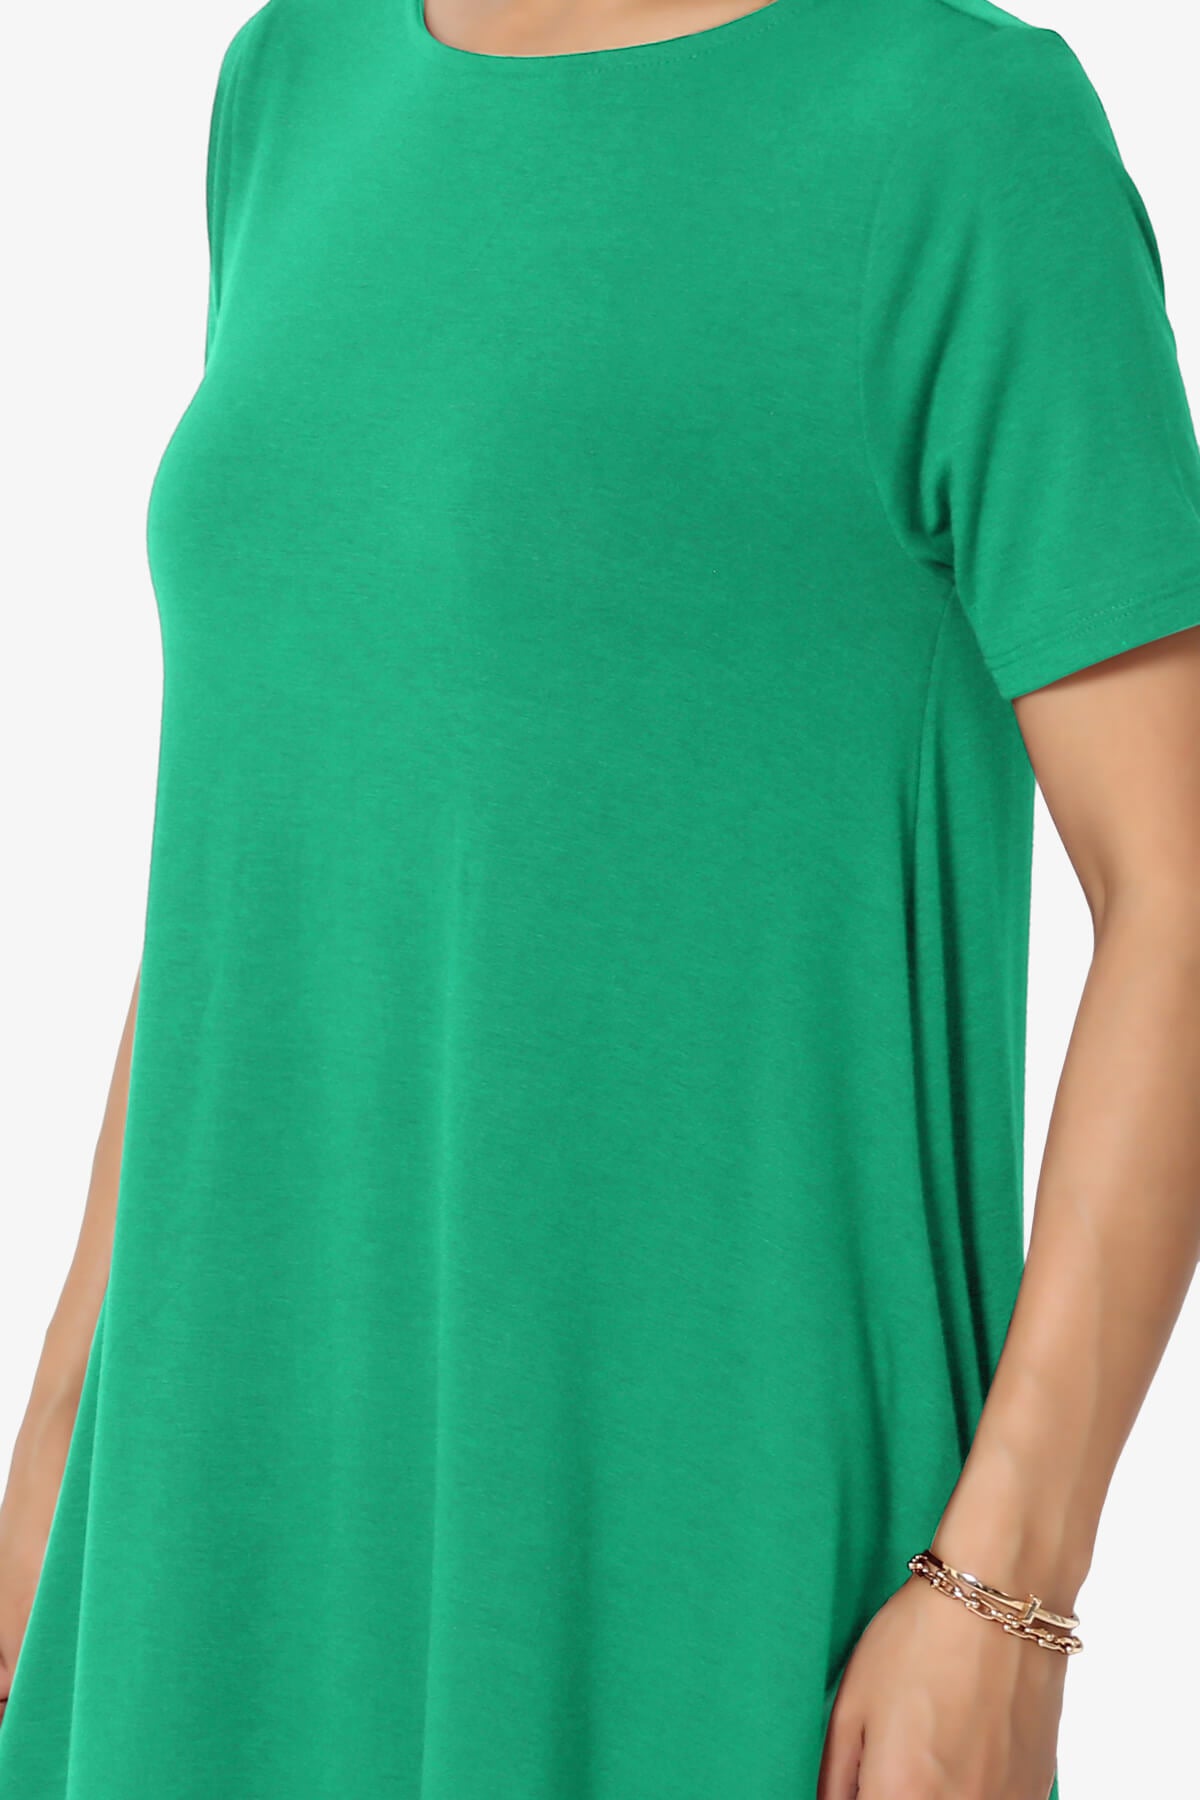 Allie Short Sleeve Jersey A-Line Dress KELLY GREEN_5